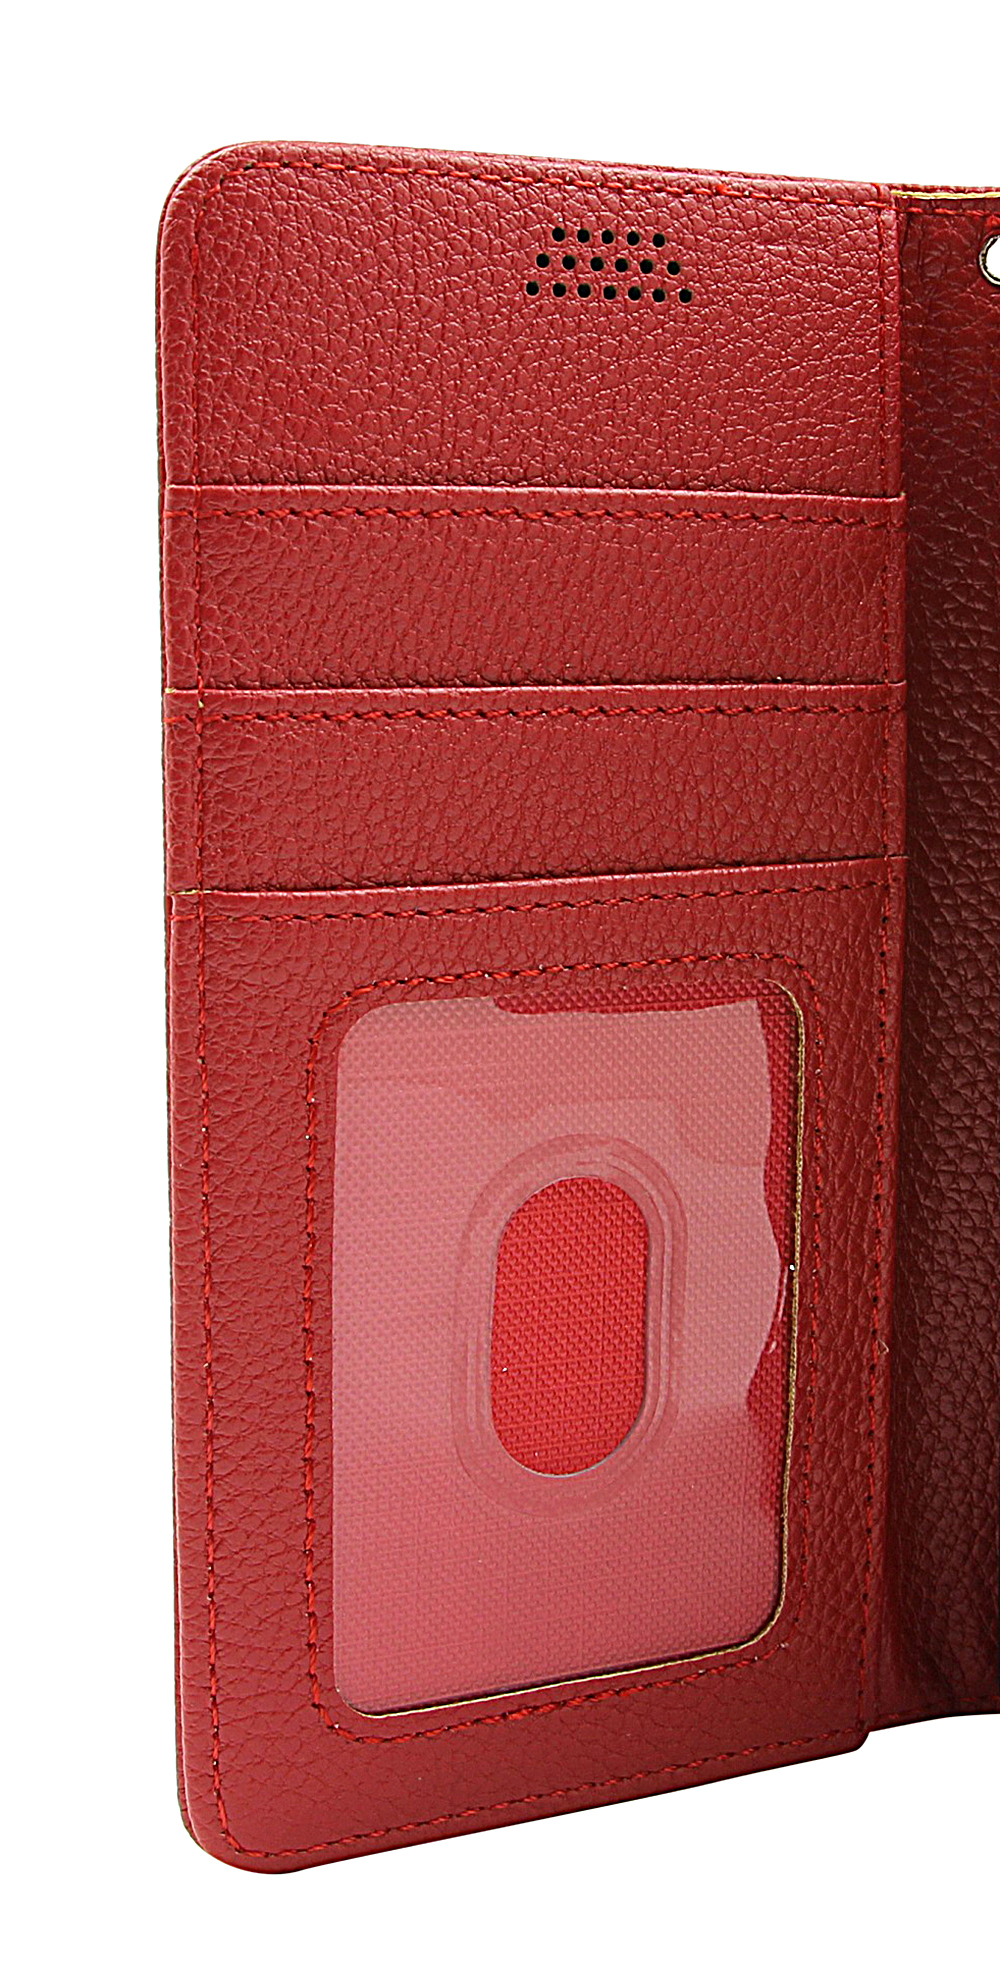 billigamobilskydd.seNew Standcase Wallet Nokia G11 / G21